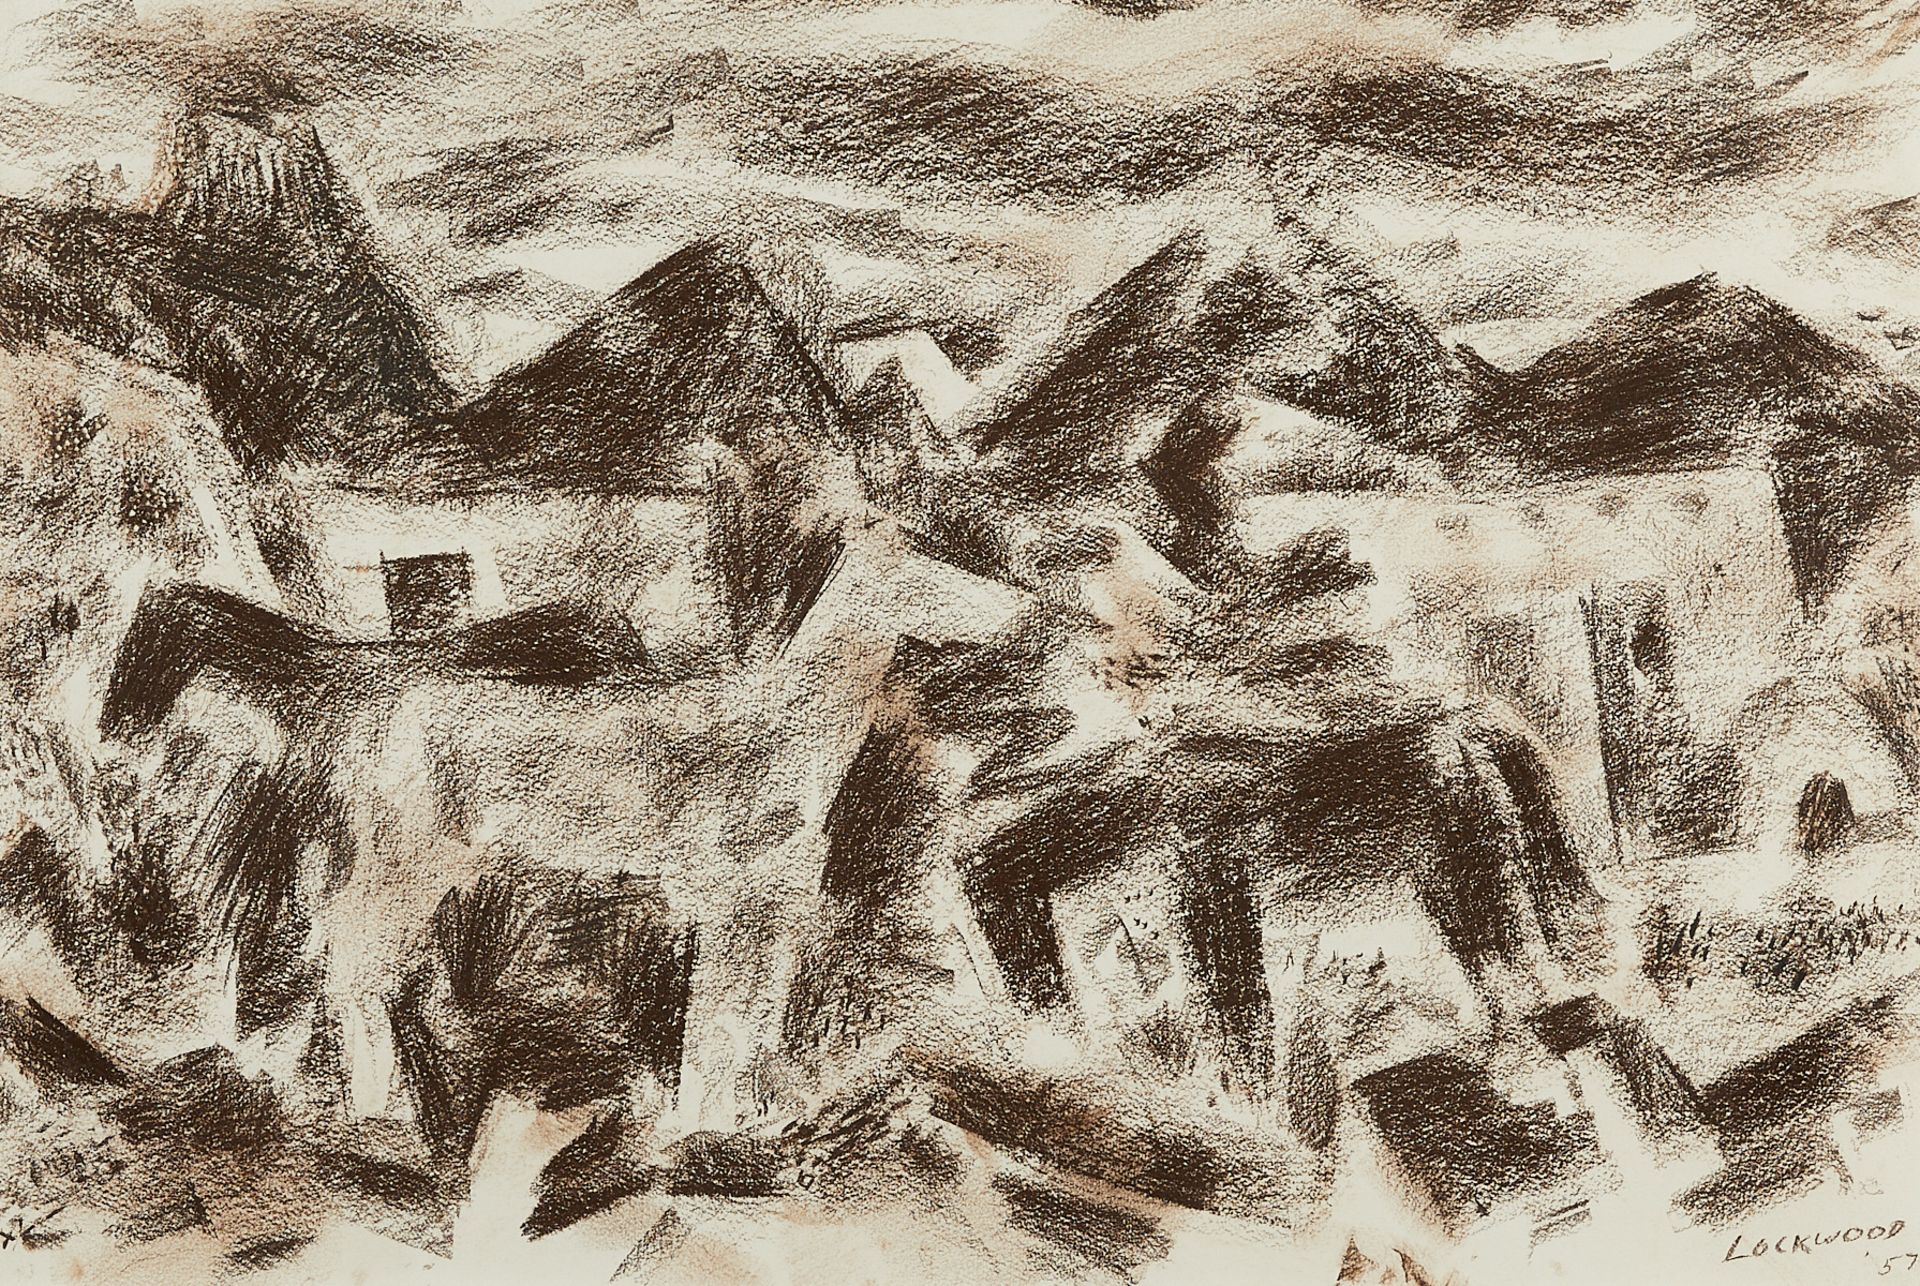 Ward Lockwood "Ranchito" Abstract Drawing 1957